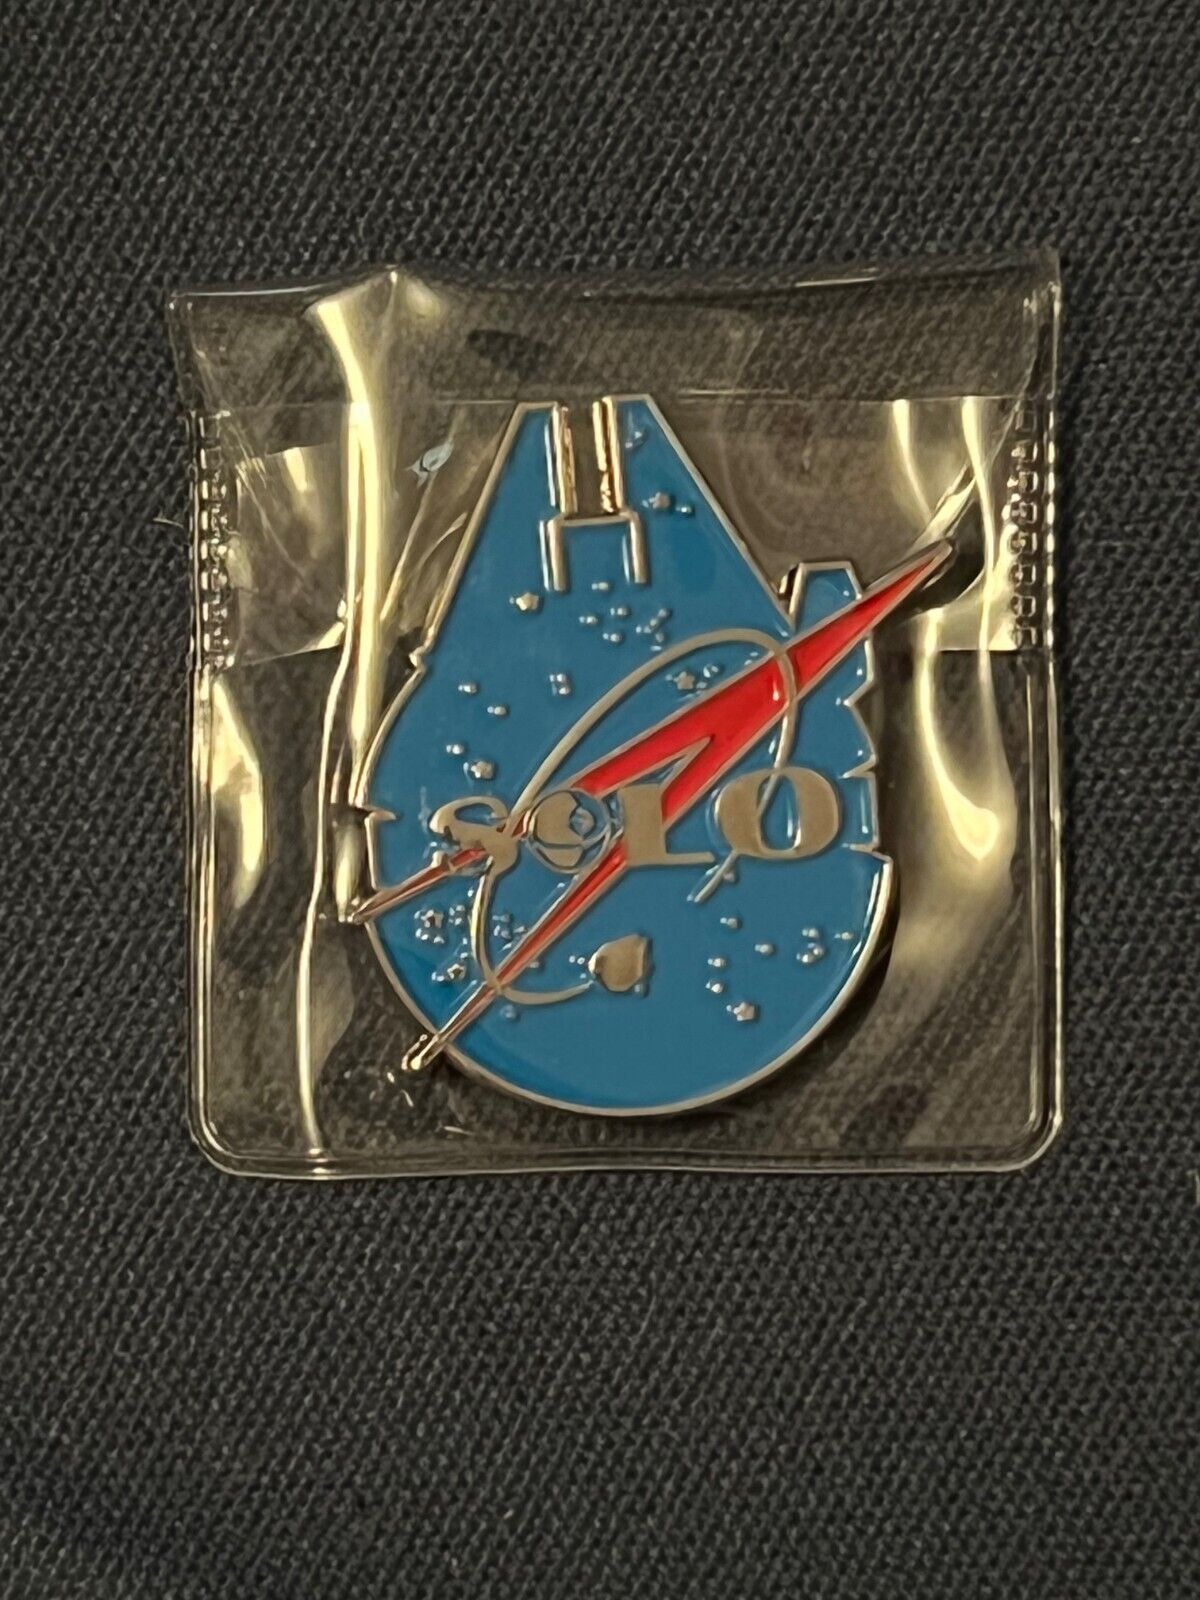 Millennium Falcon Star Wars / NASA inspired Challenge Coin